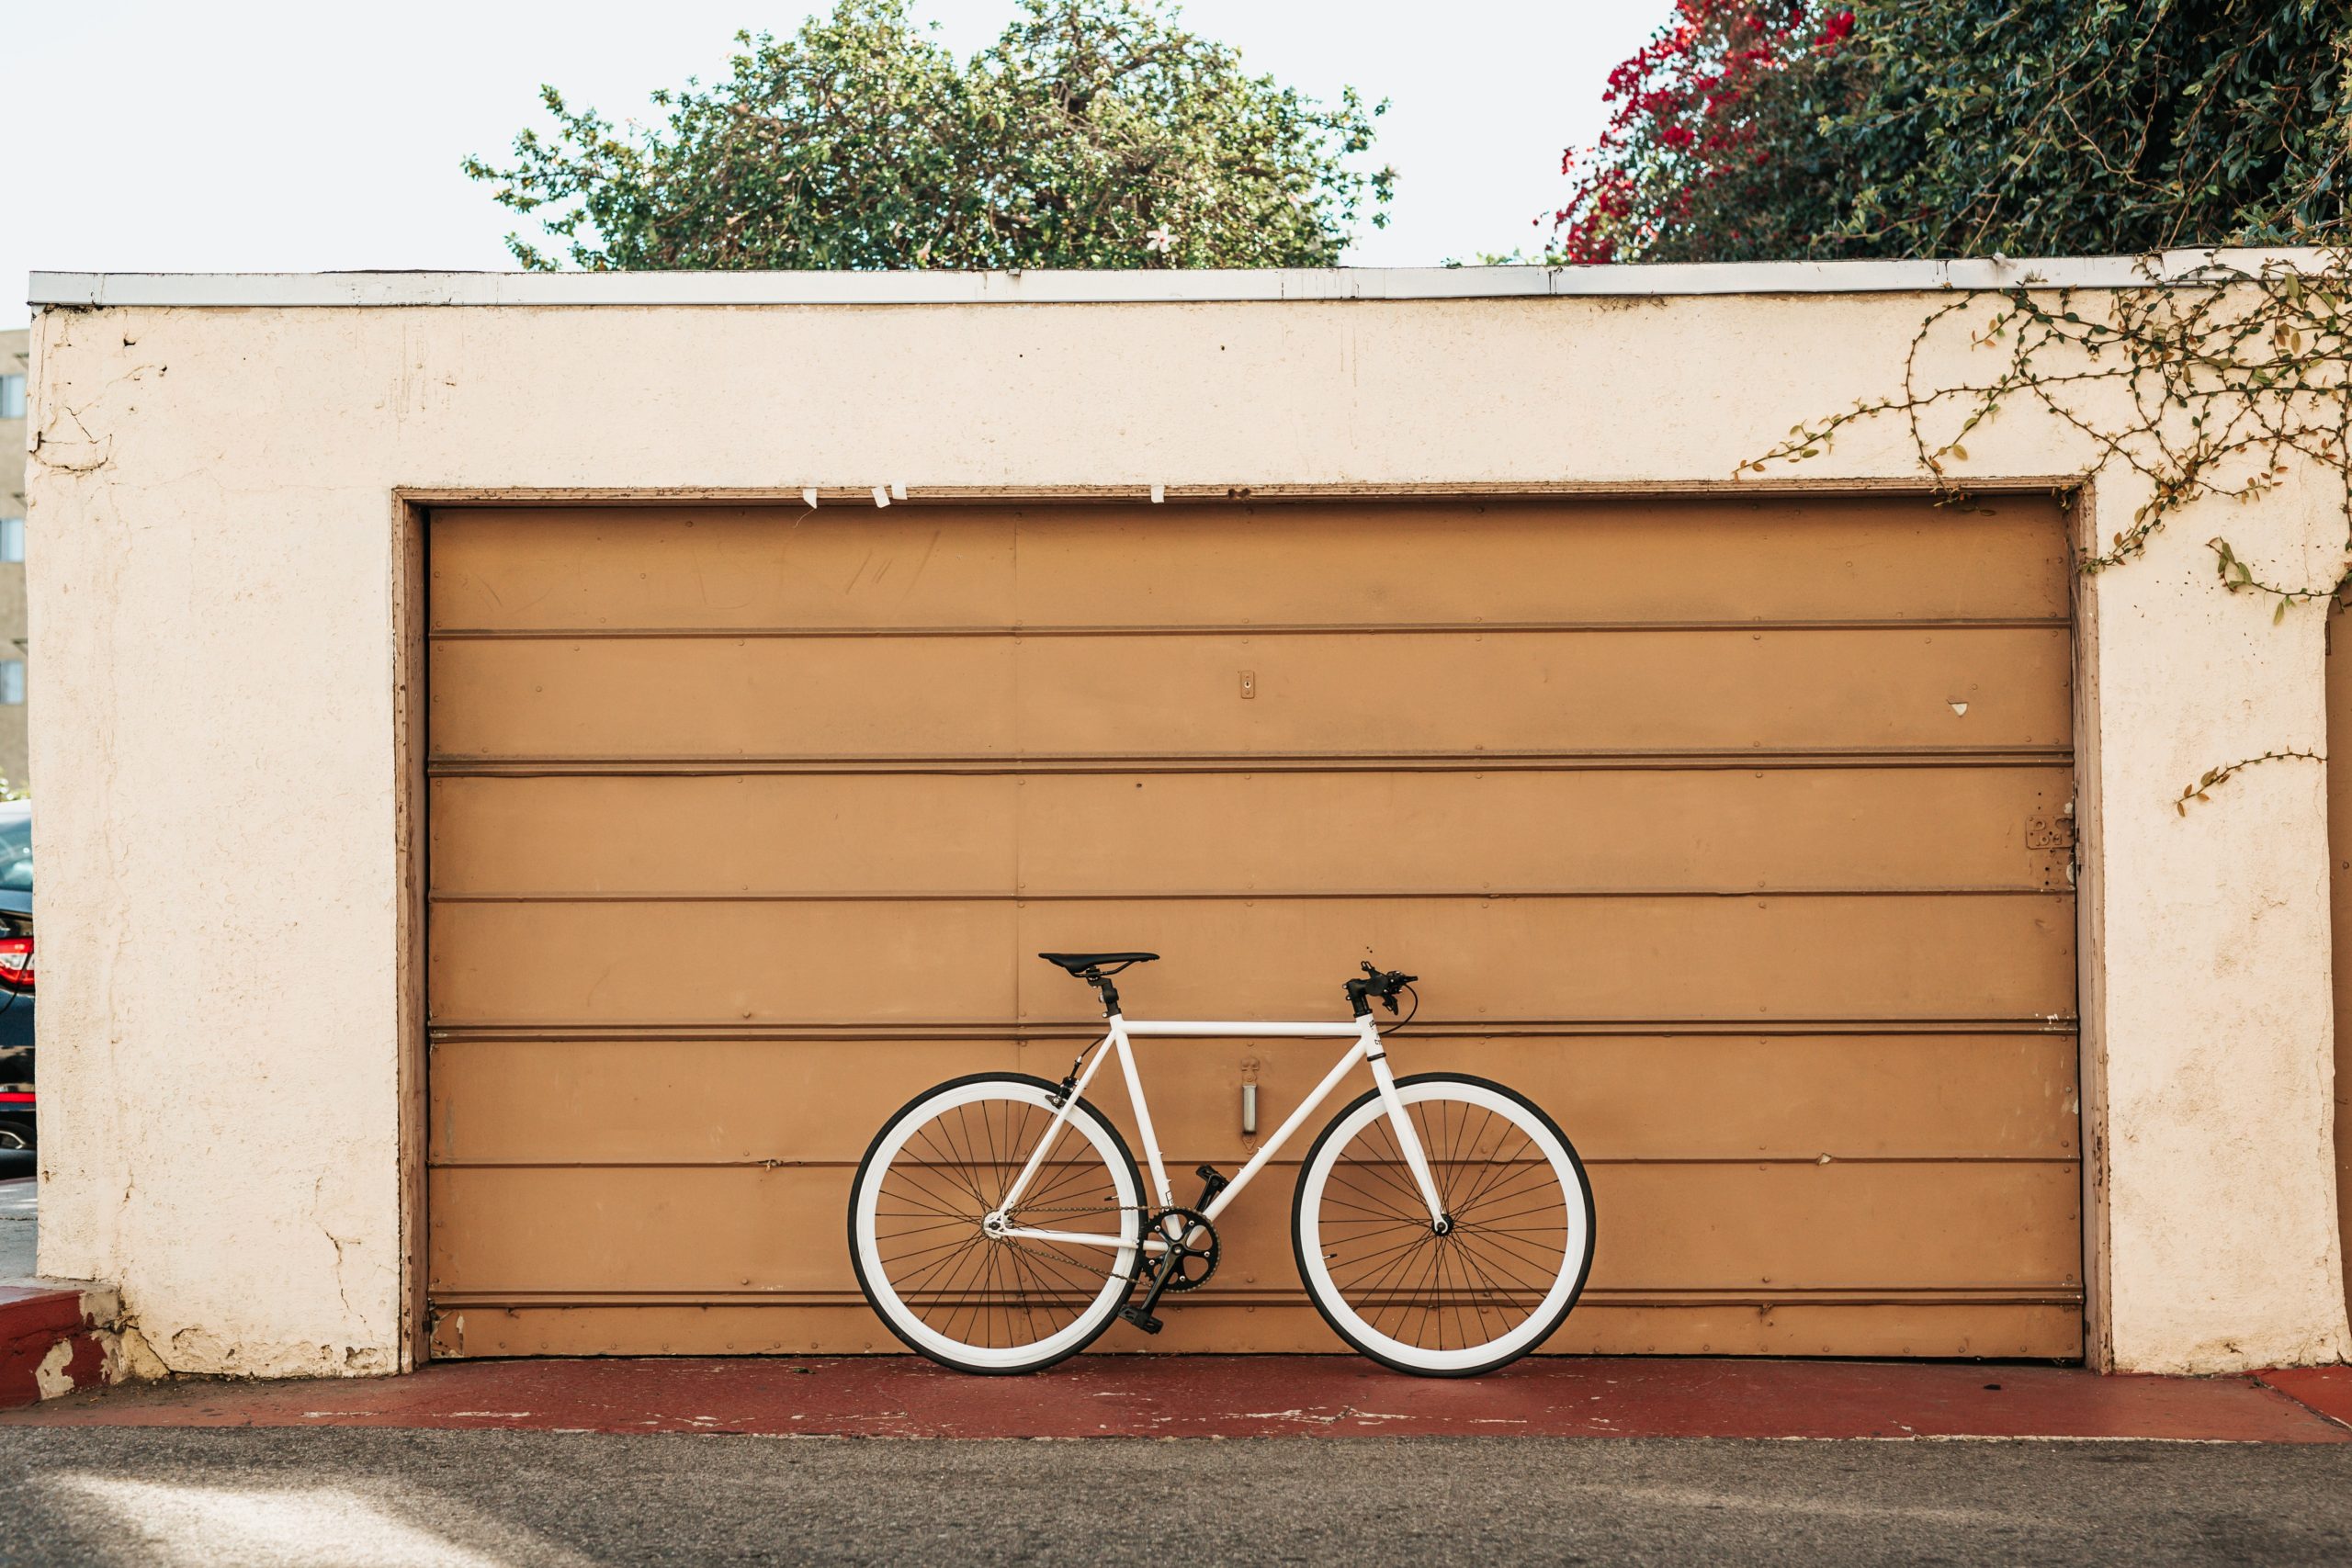 Bicycle in front of a garage door